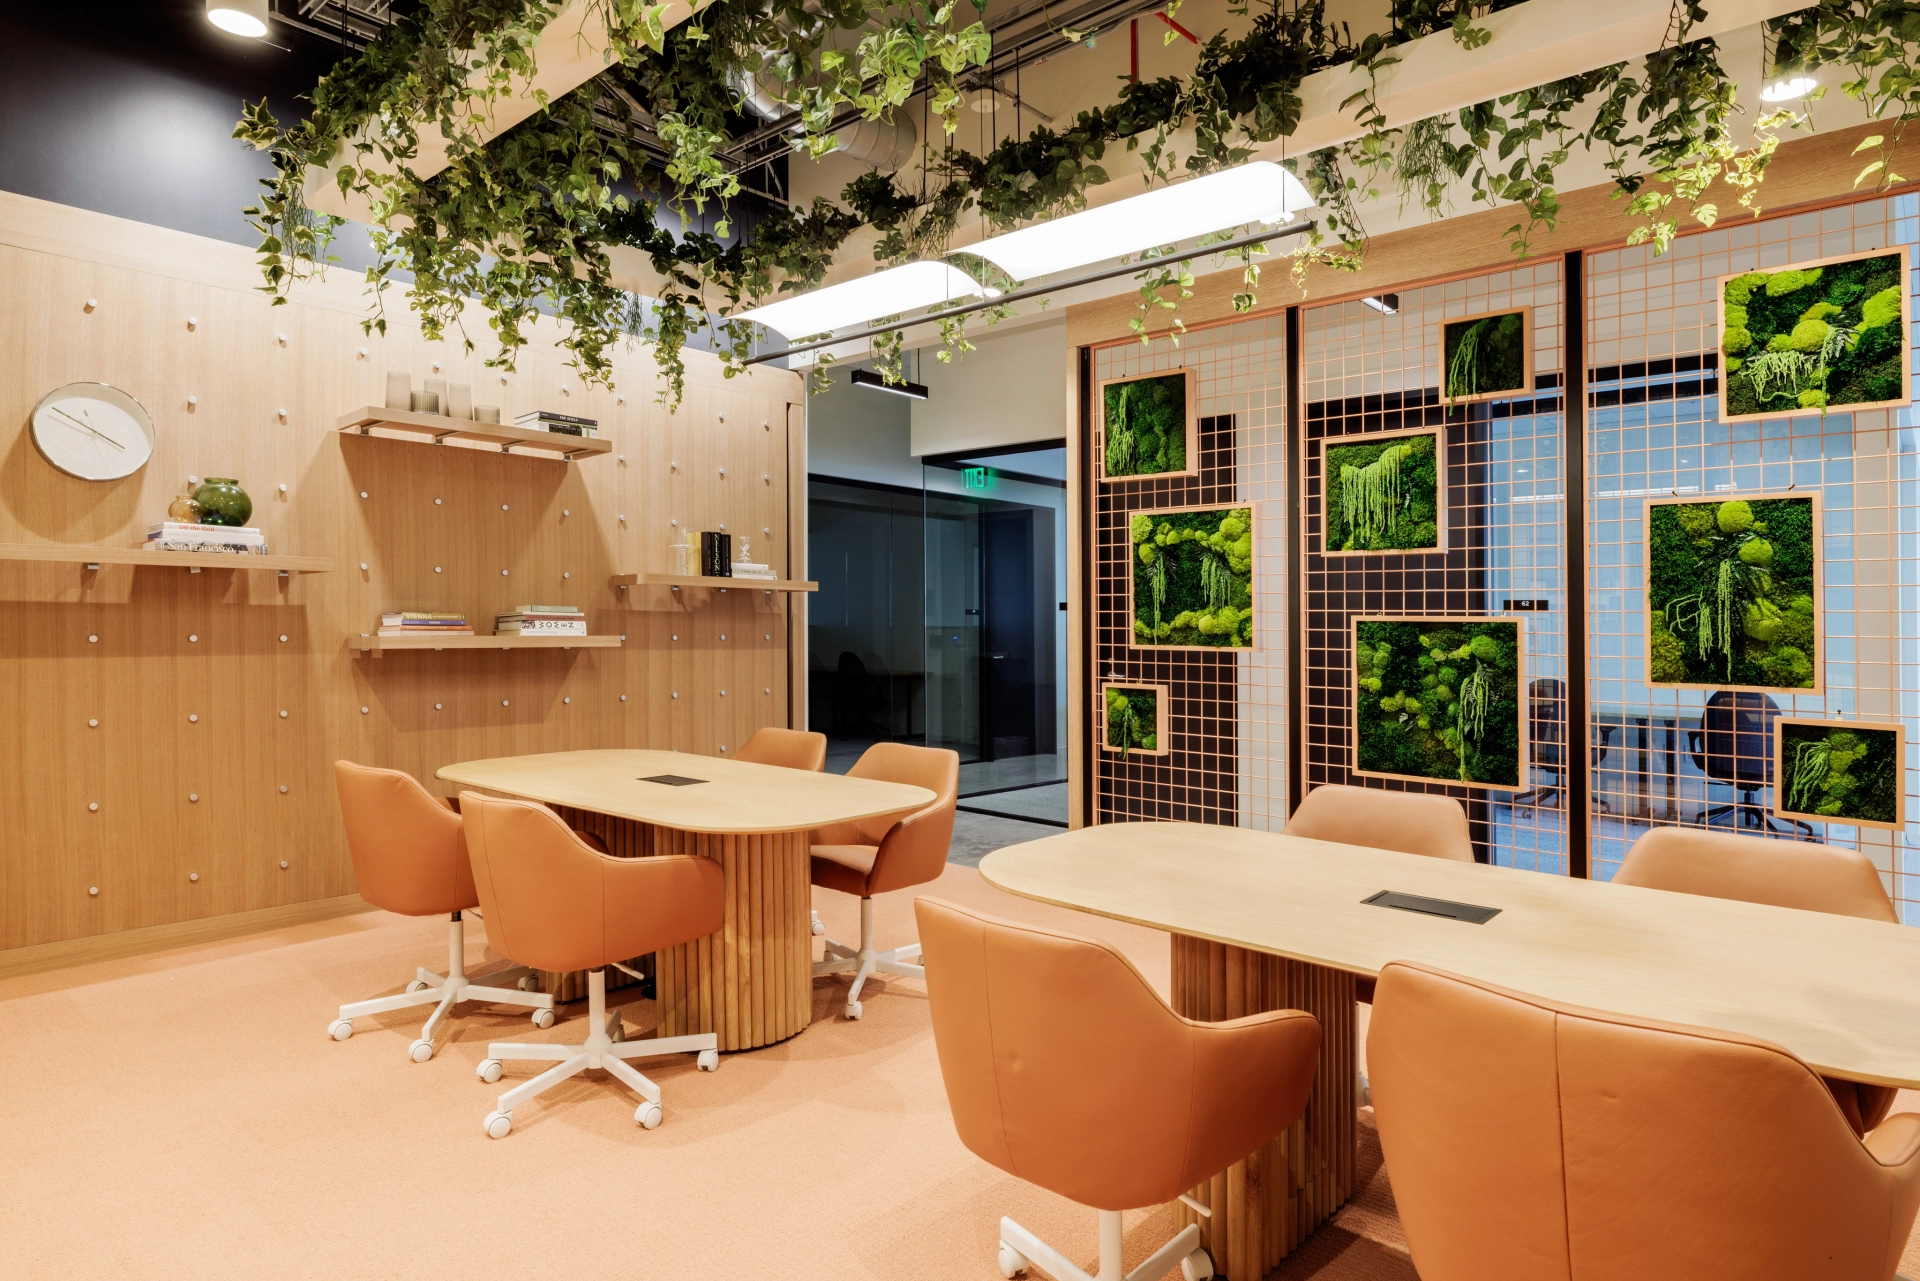 Une salle de réunion spacieuse à San Francisco équipée d'une table et de chaises, parfaite pour un espace de travail collaboratif.